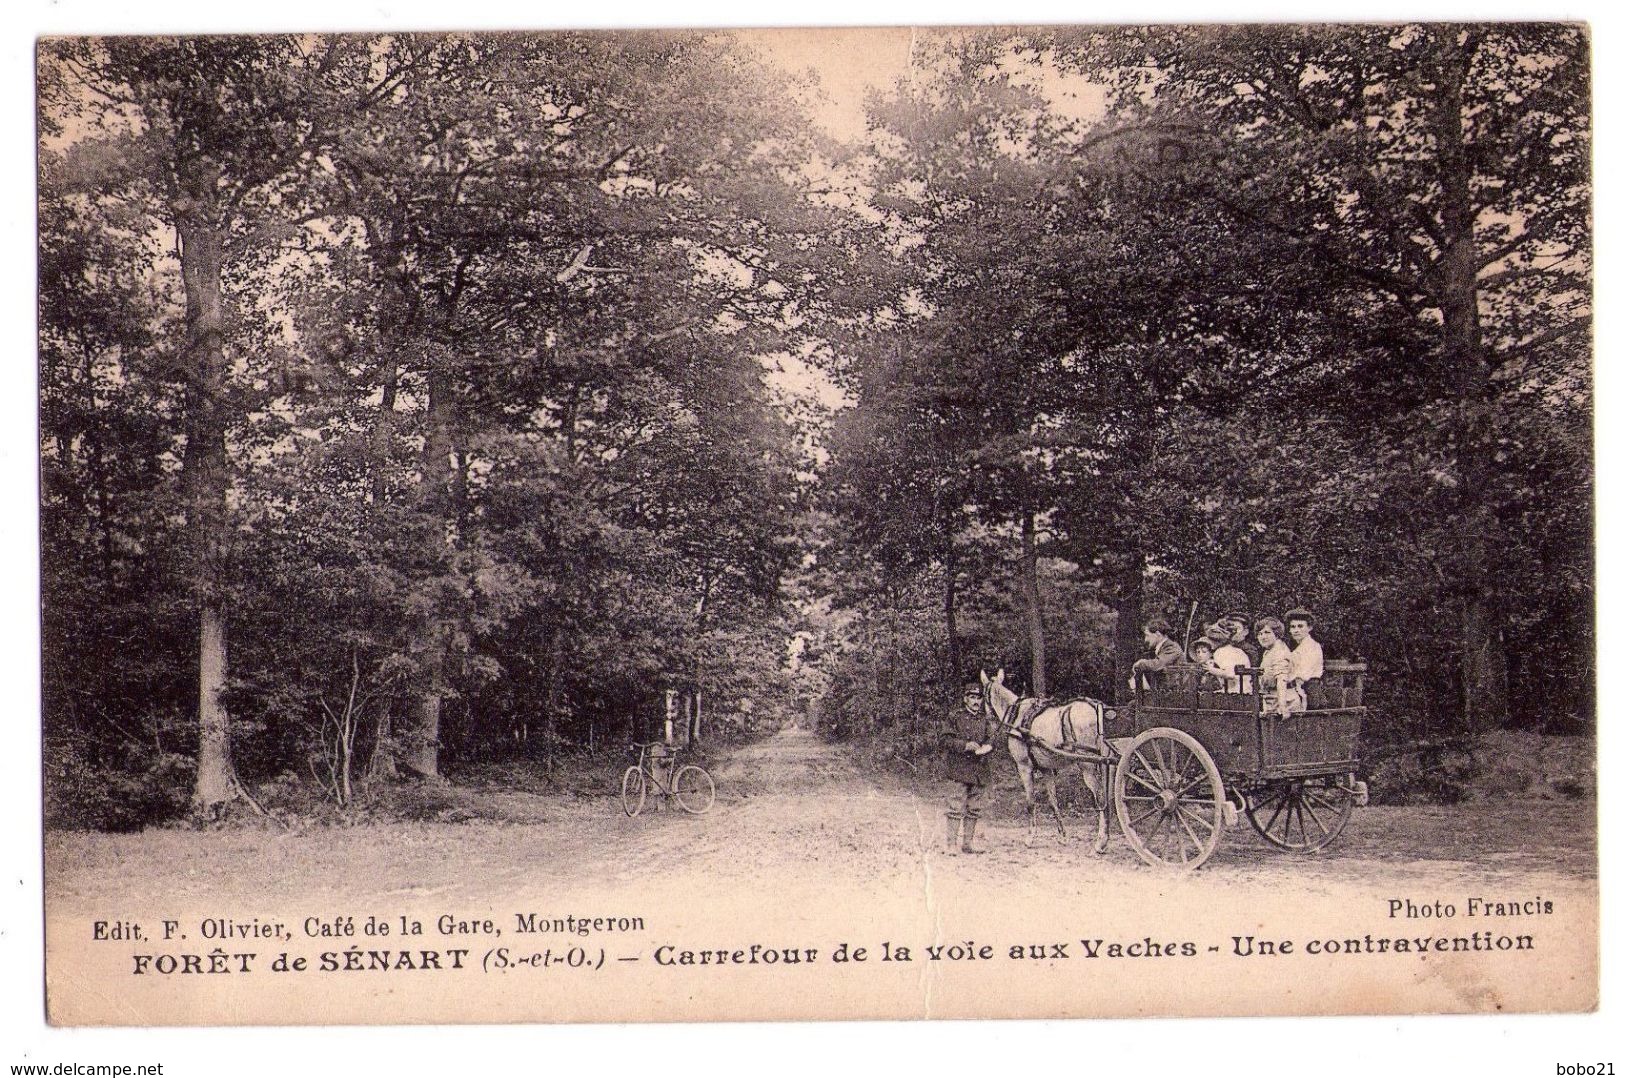 D072 - Forêt De Sénart - Carrefour De La Croix Zux Vaches - Une Contreavention - Phot.Francis  édit. F.Olivier - Montgeron